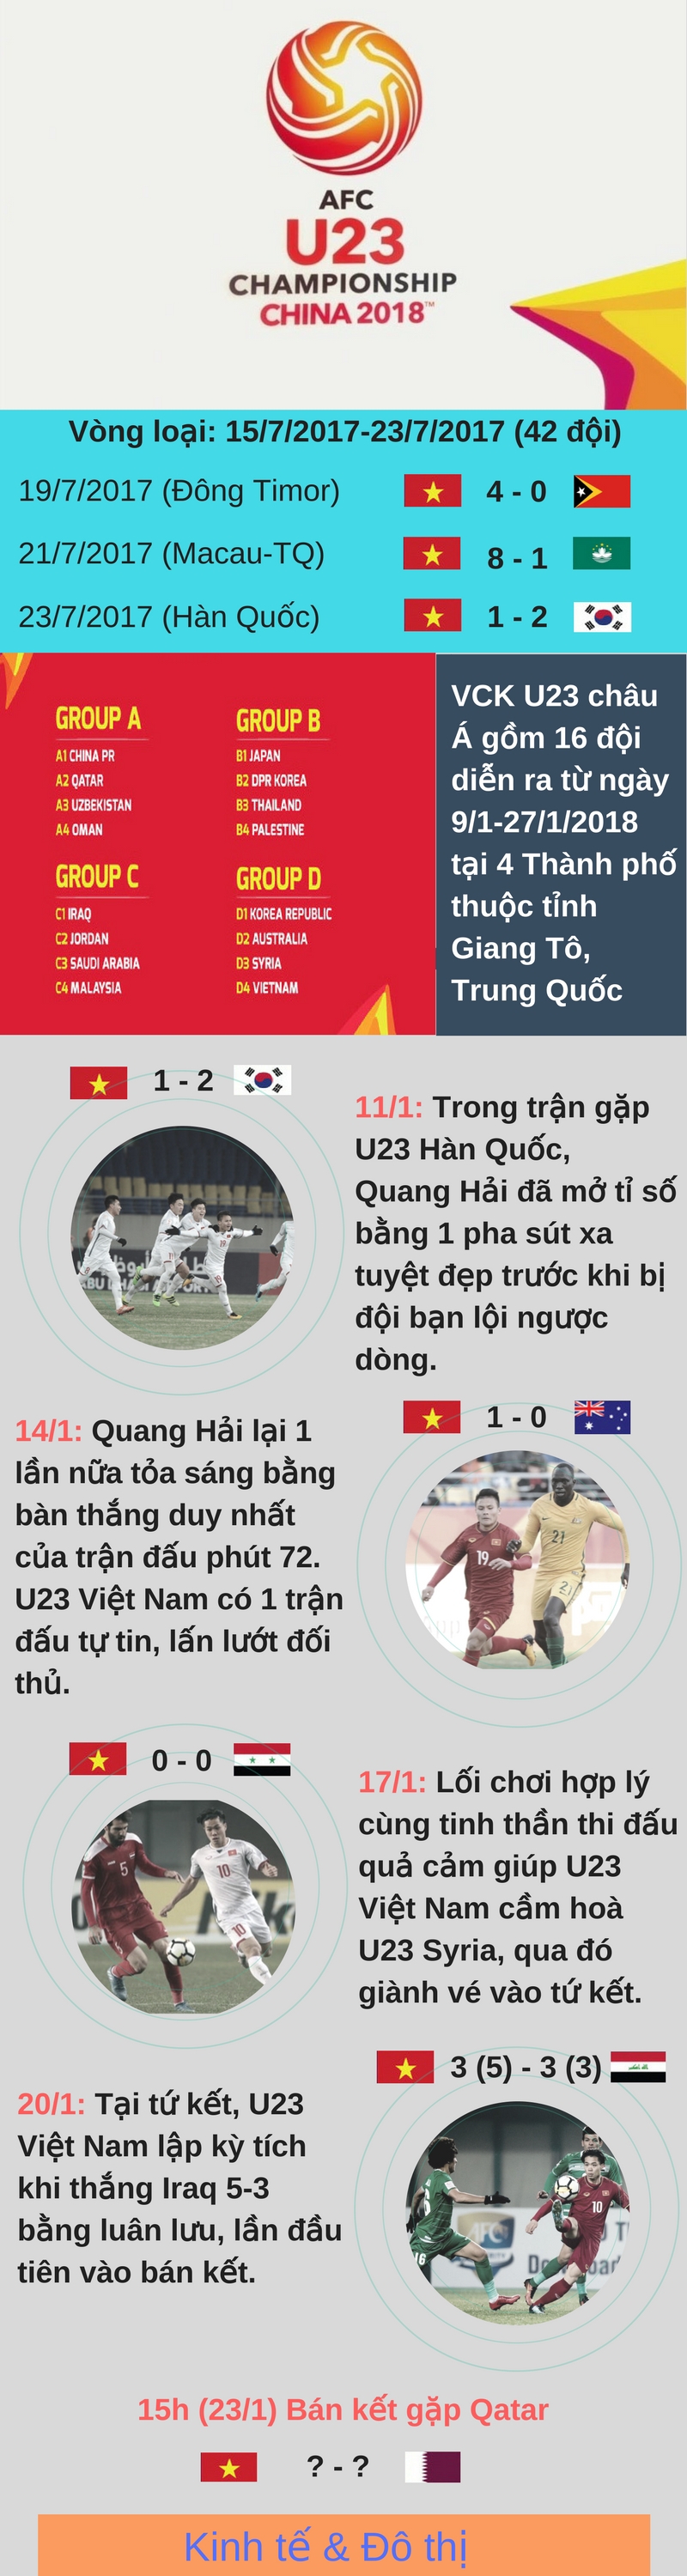 Infographic: Hành trình vào bán kết giải U23 châu Á của "Những con rồng đỏ" - Ảnh 1